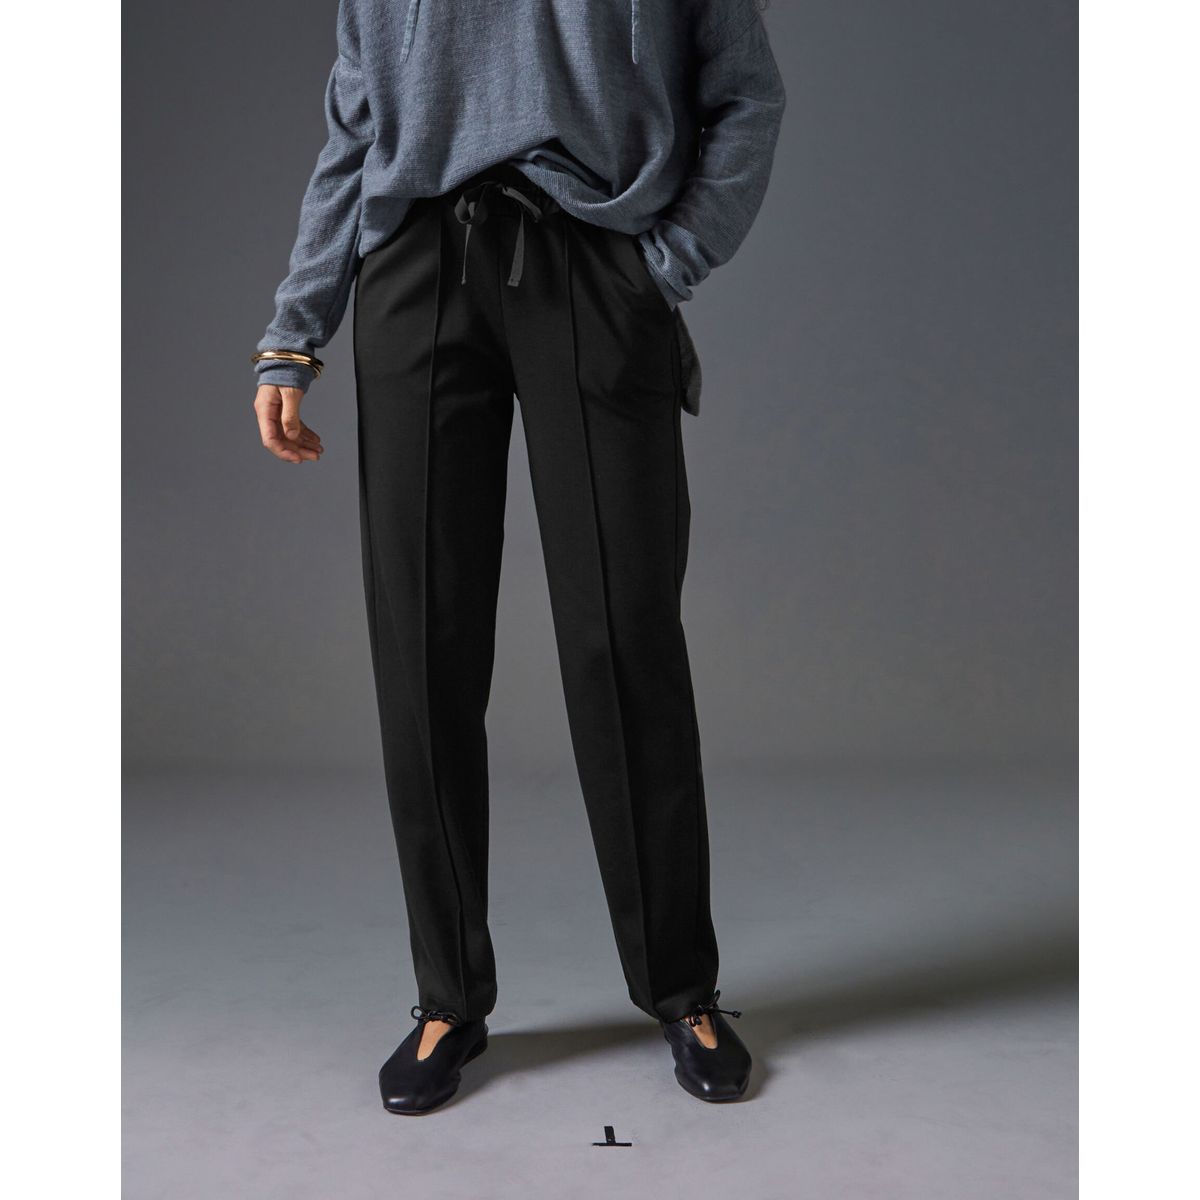 Pantalon jogger, en cachemire et laine La Redoute Collections gris